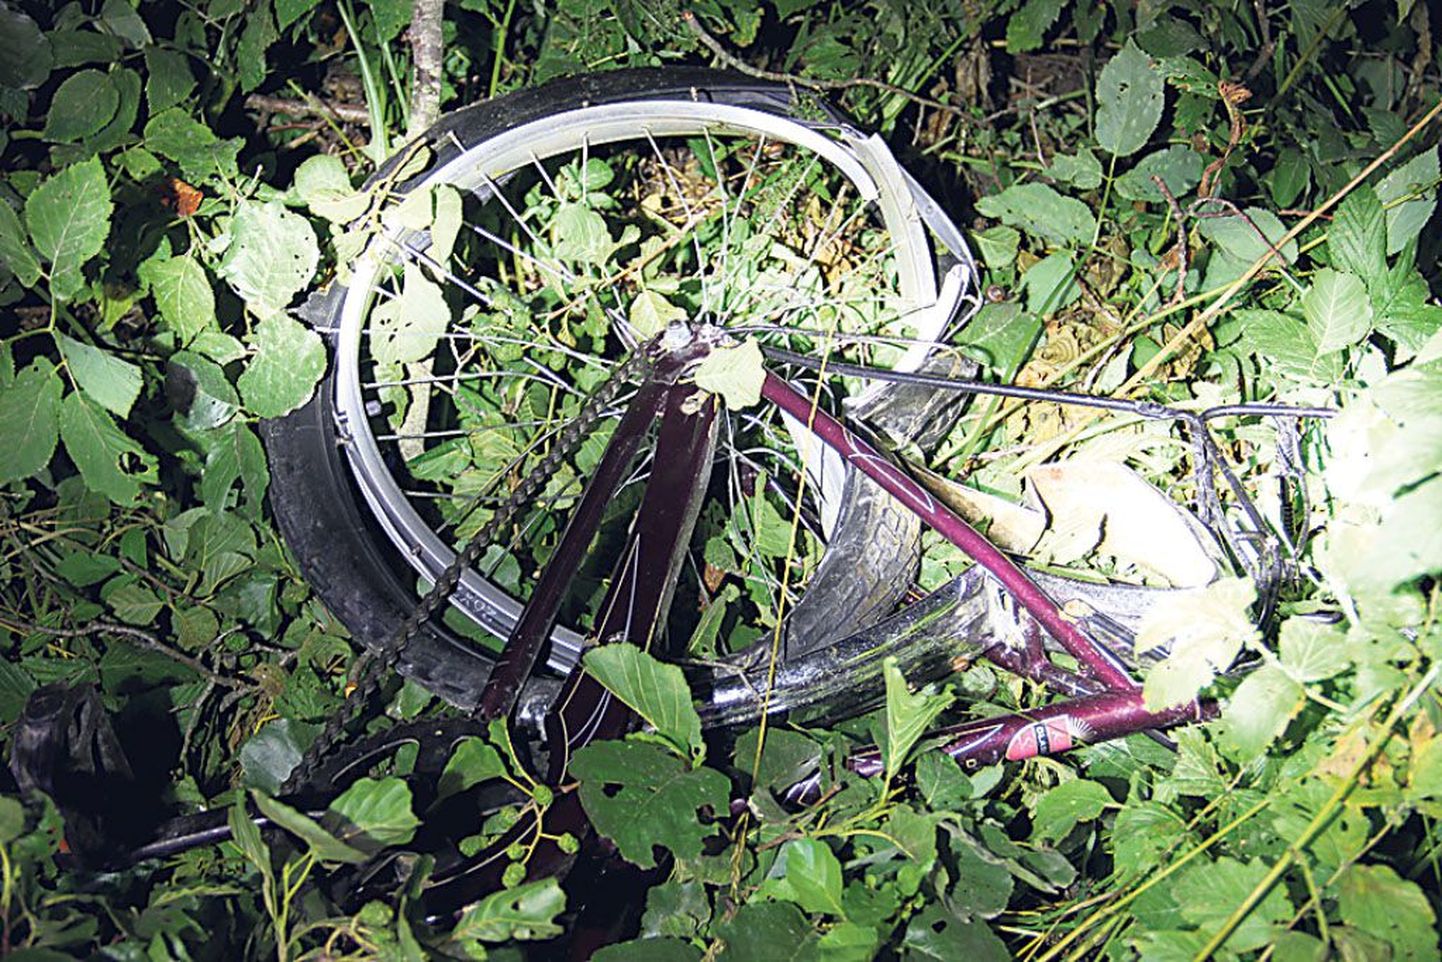 Laupäeval hukkunud 14aastase tüdruku jalgrattast ei jäänud suurt midagi järele.